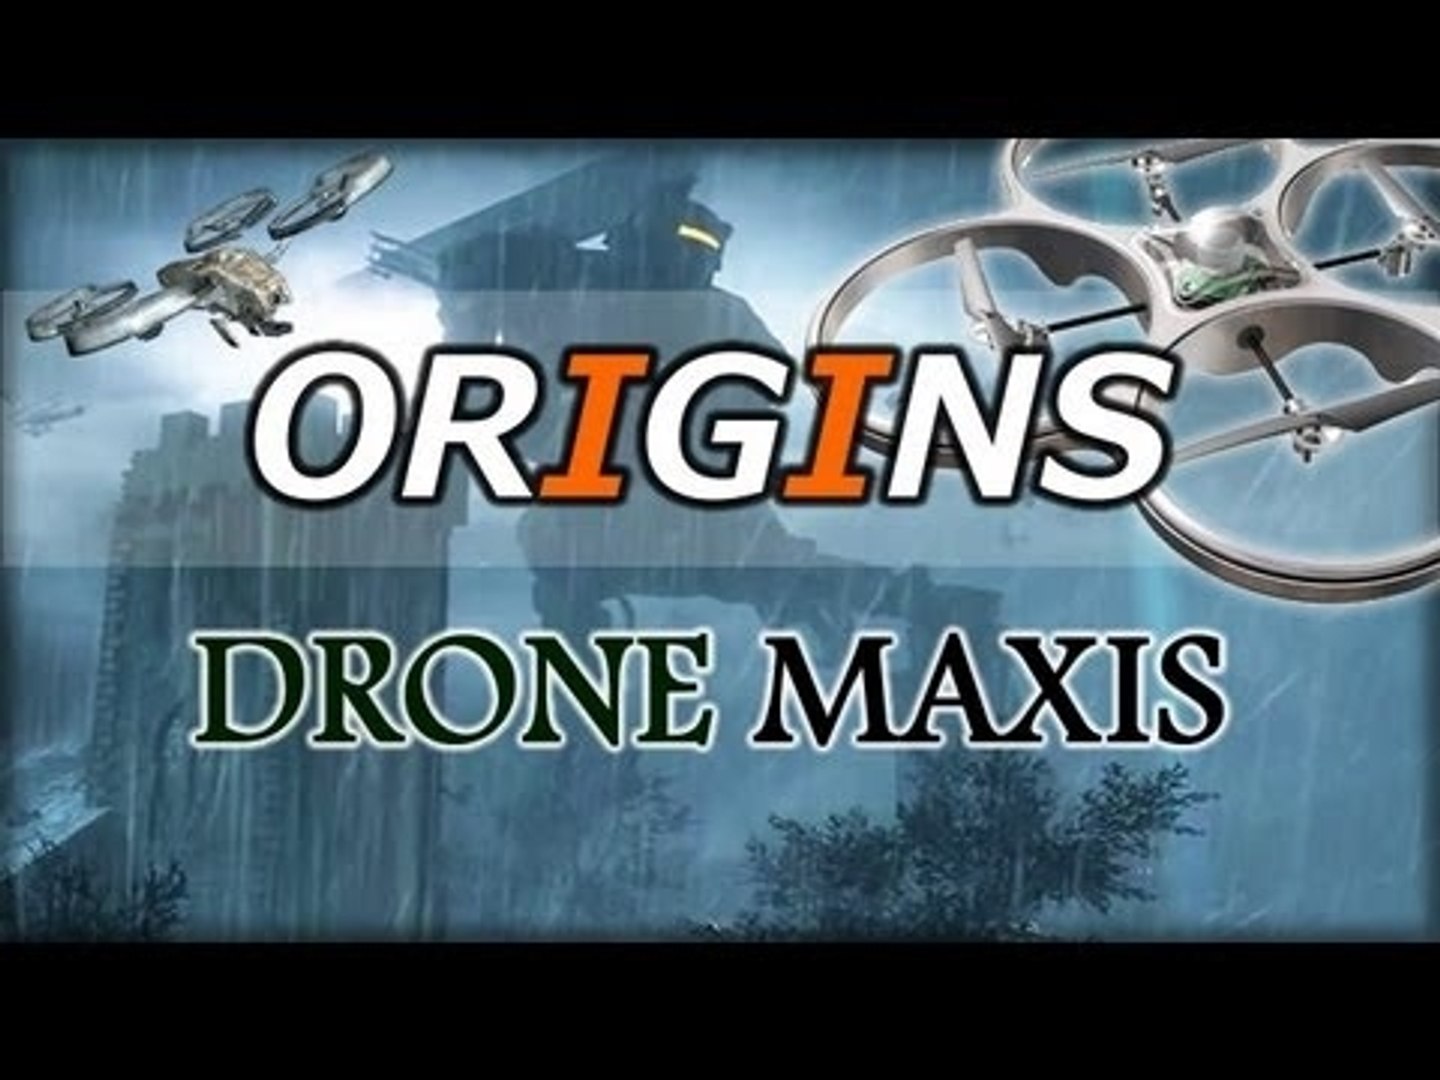 Tutorial DRONE MAXIS [ITA] tutti i pezzi da raccogliere su ORIGINS by Blue  - Video Dailymotion